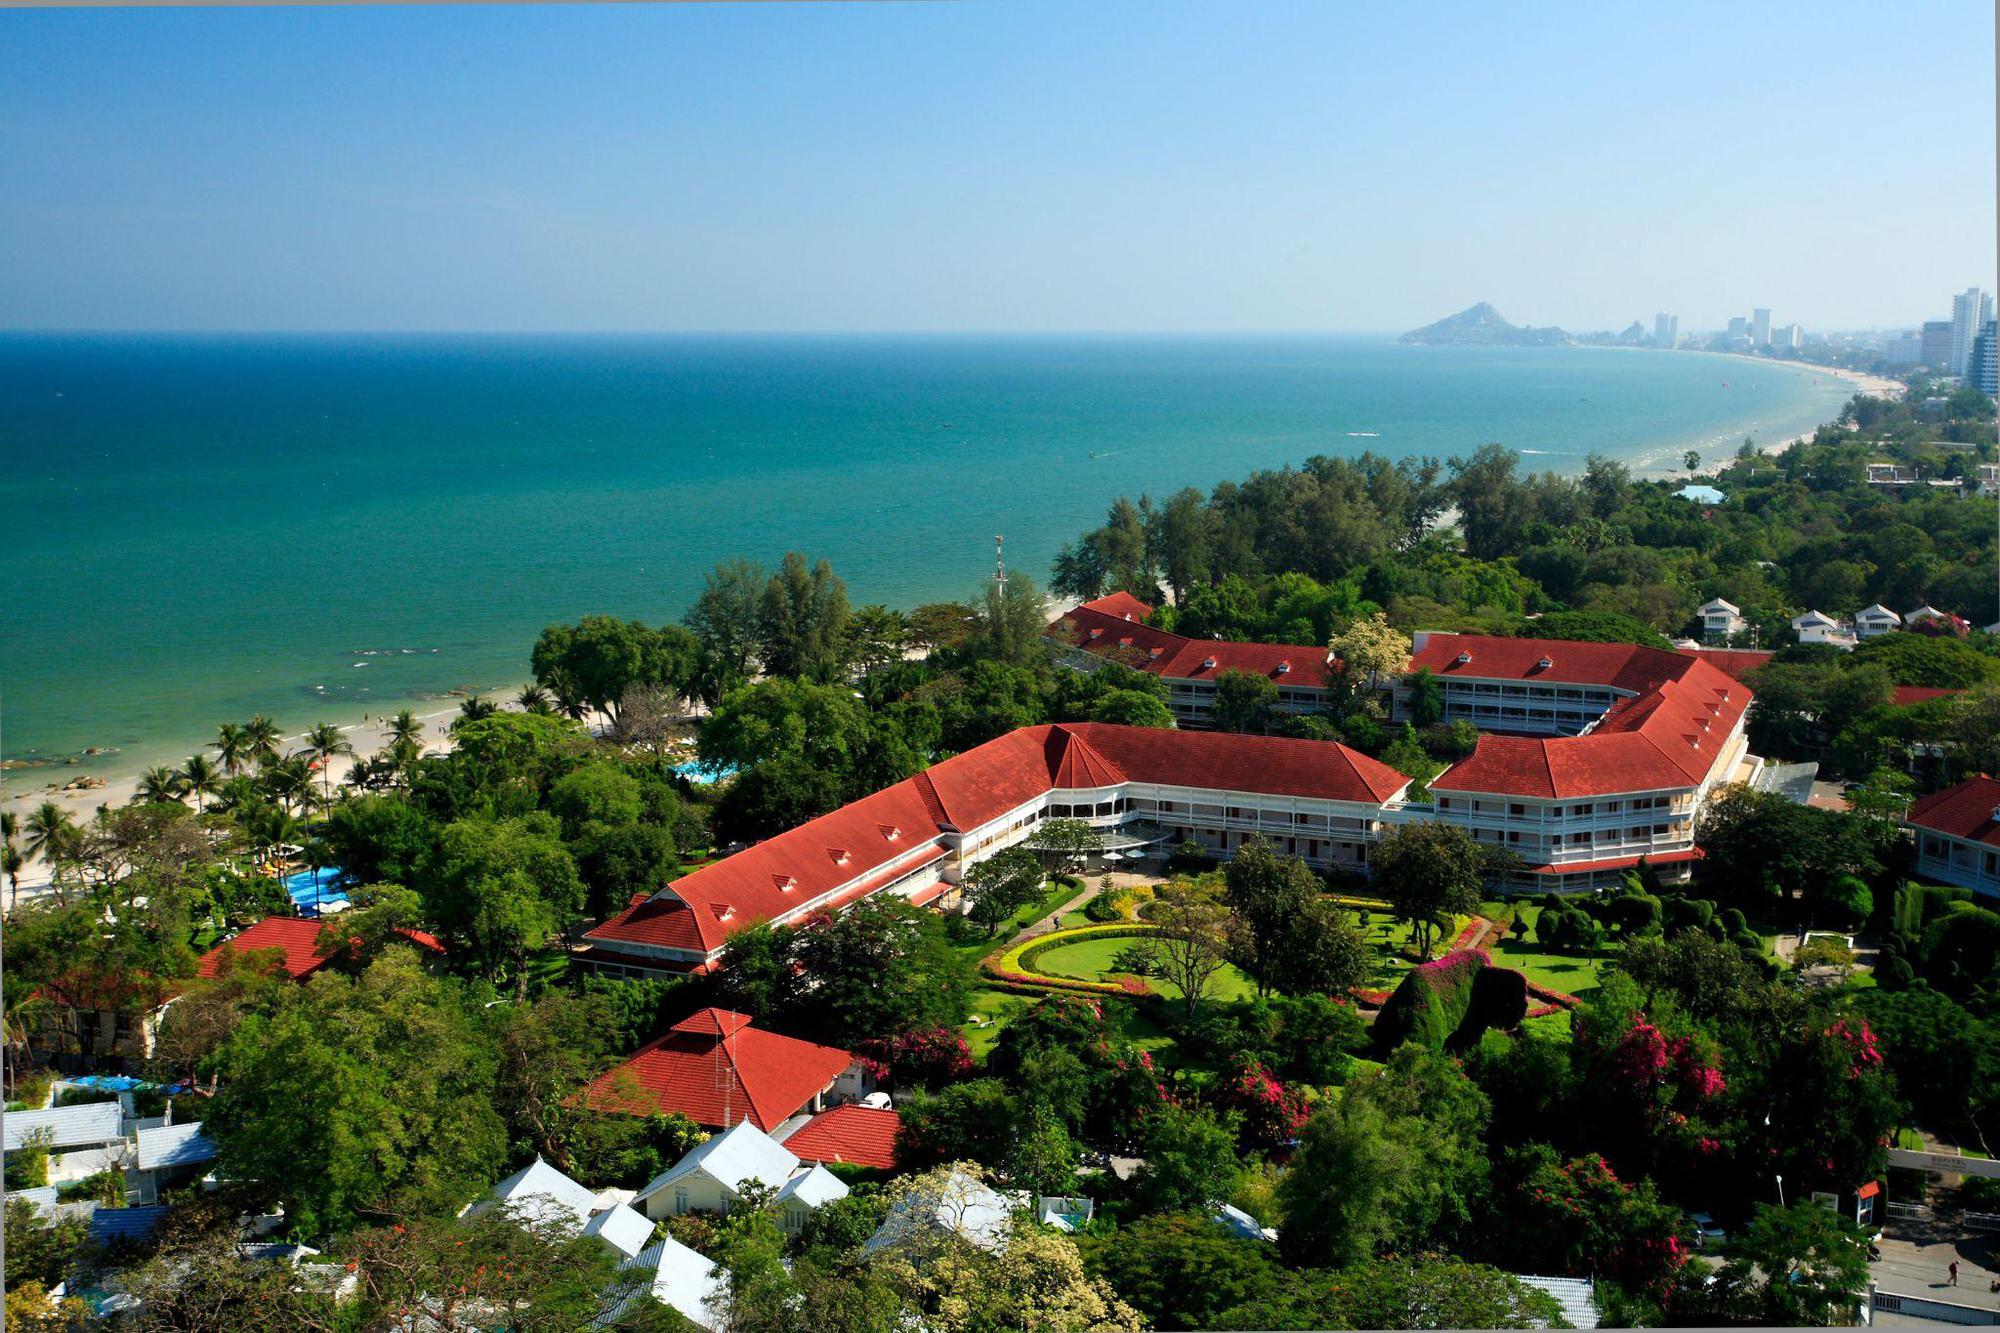 Đến Thái Lan đừng quên ghé Centara - Chuỗi khách sạn mang đậm cảm hứng gia đình và lòng hiếu khách của người dân xứ chùa Vàng - Ảnh 8.